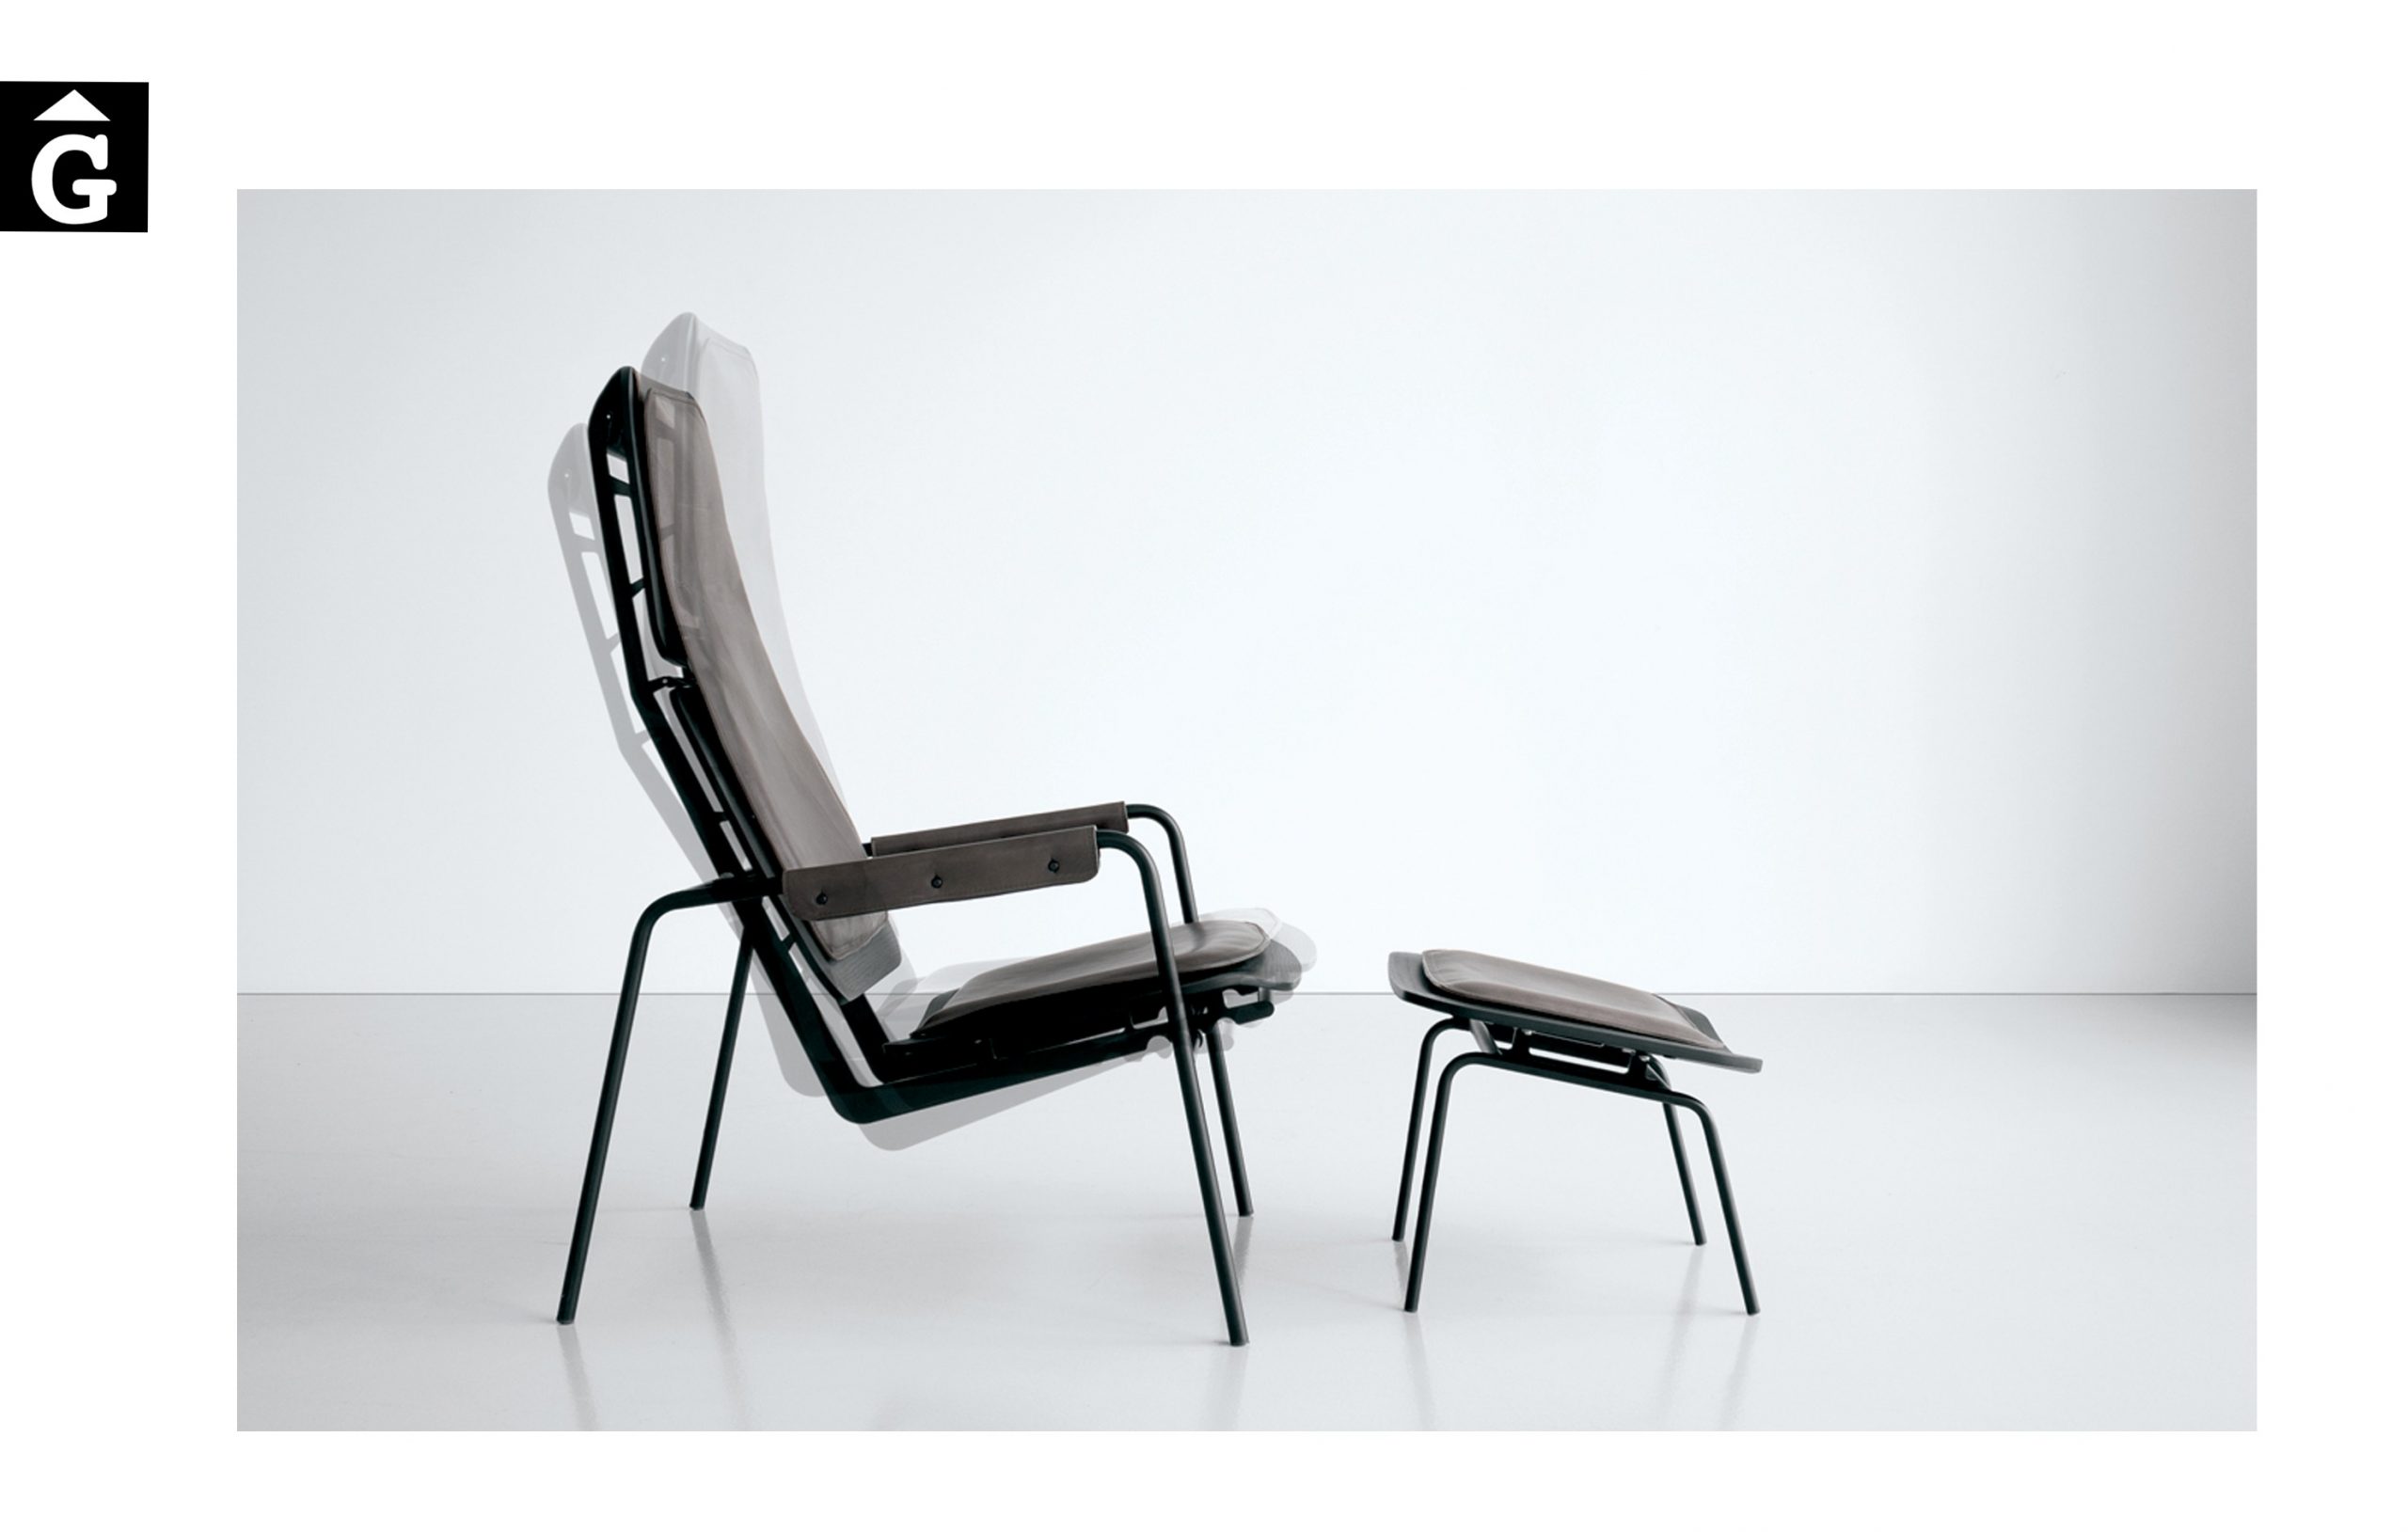 Butaca Viking GL Extendo Design Source by mobles Gifreu botiga elements interiors